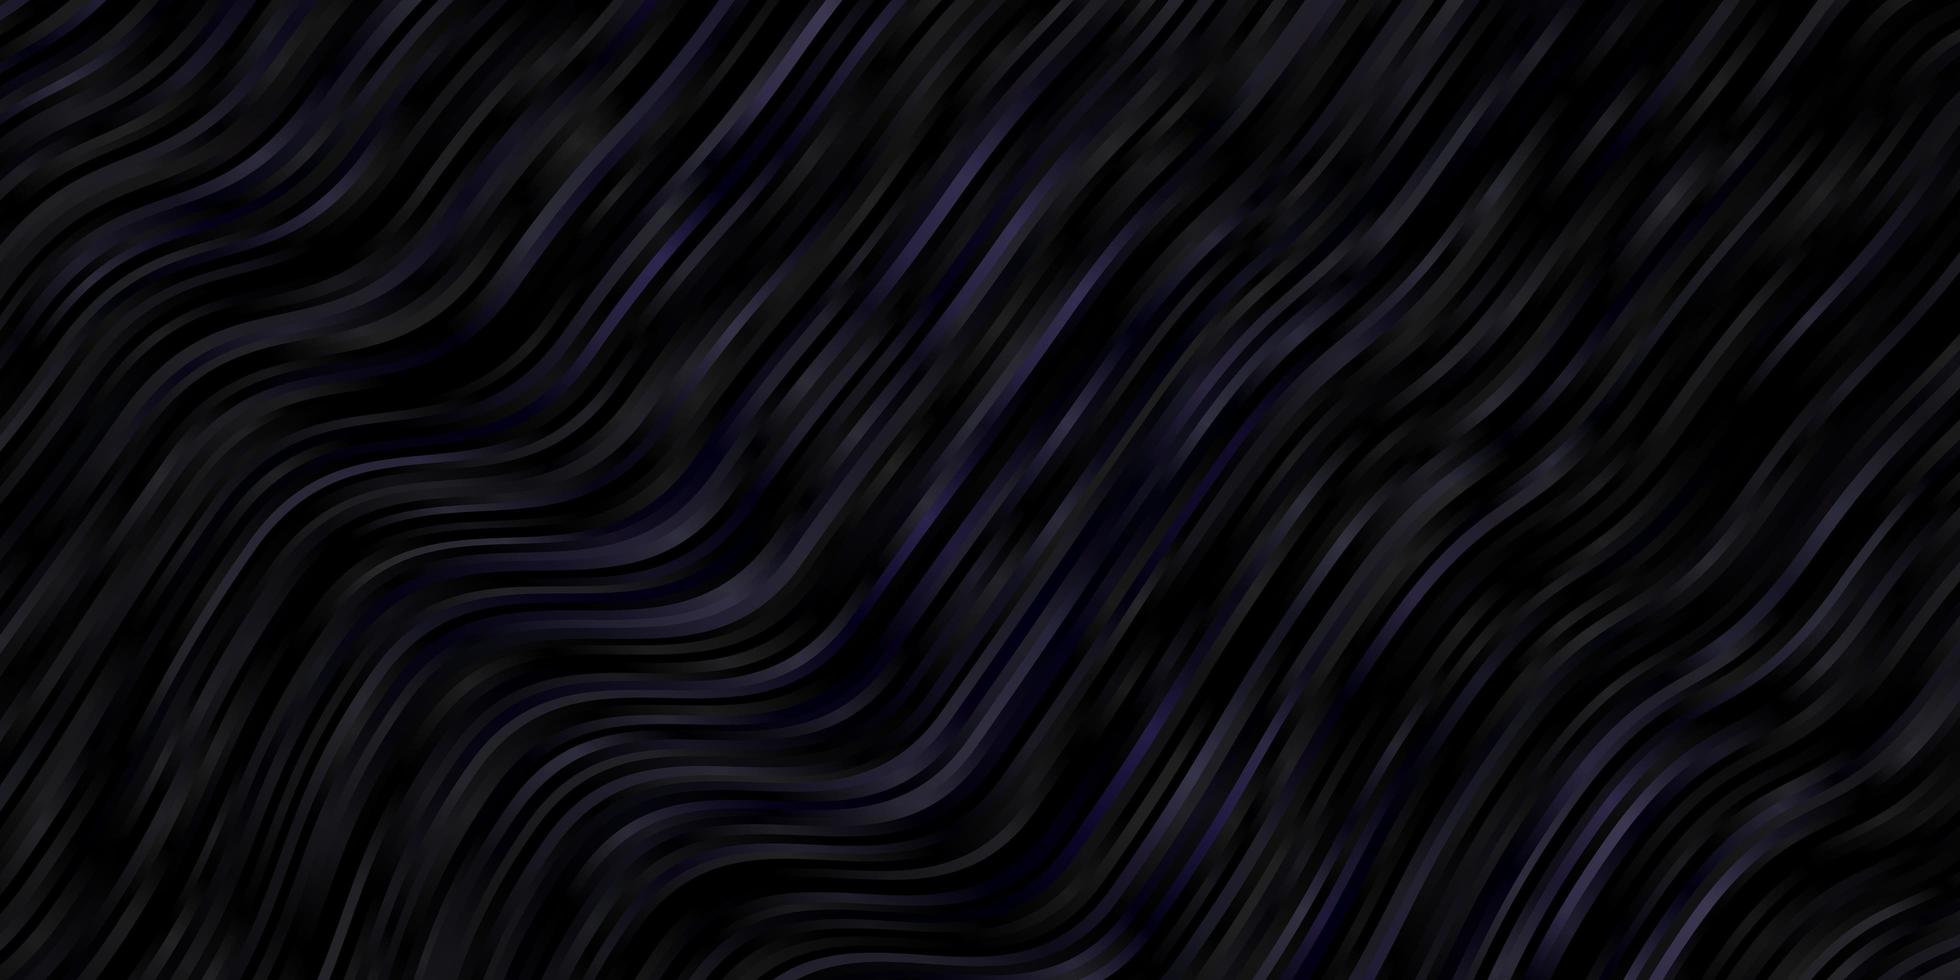 modelo de vetor cinza escuro com linhas.